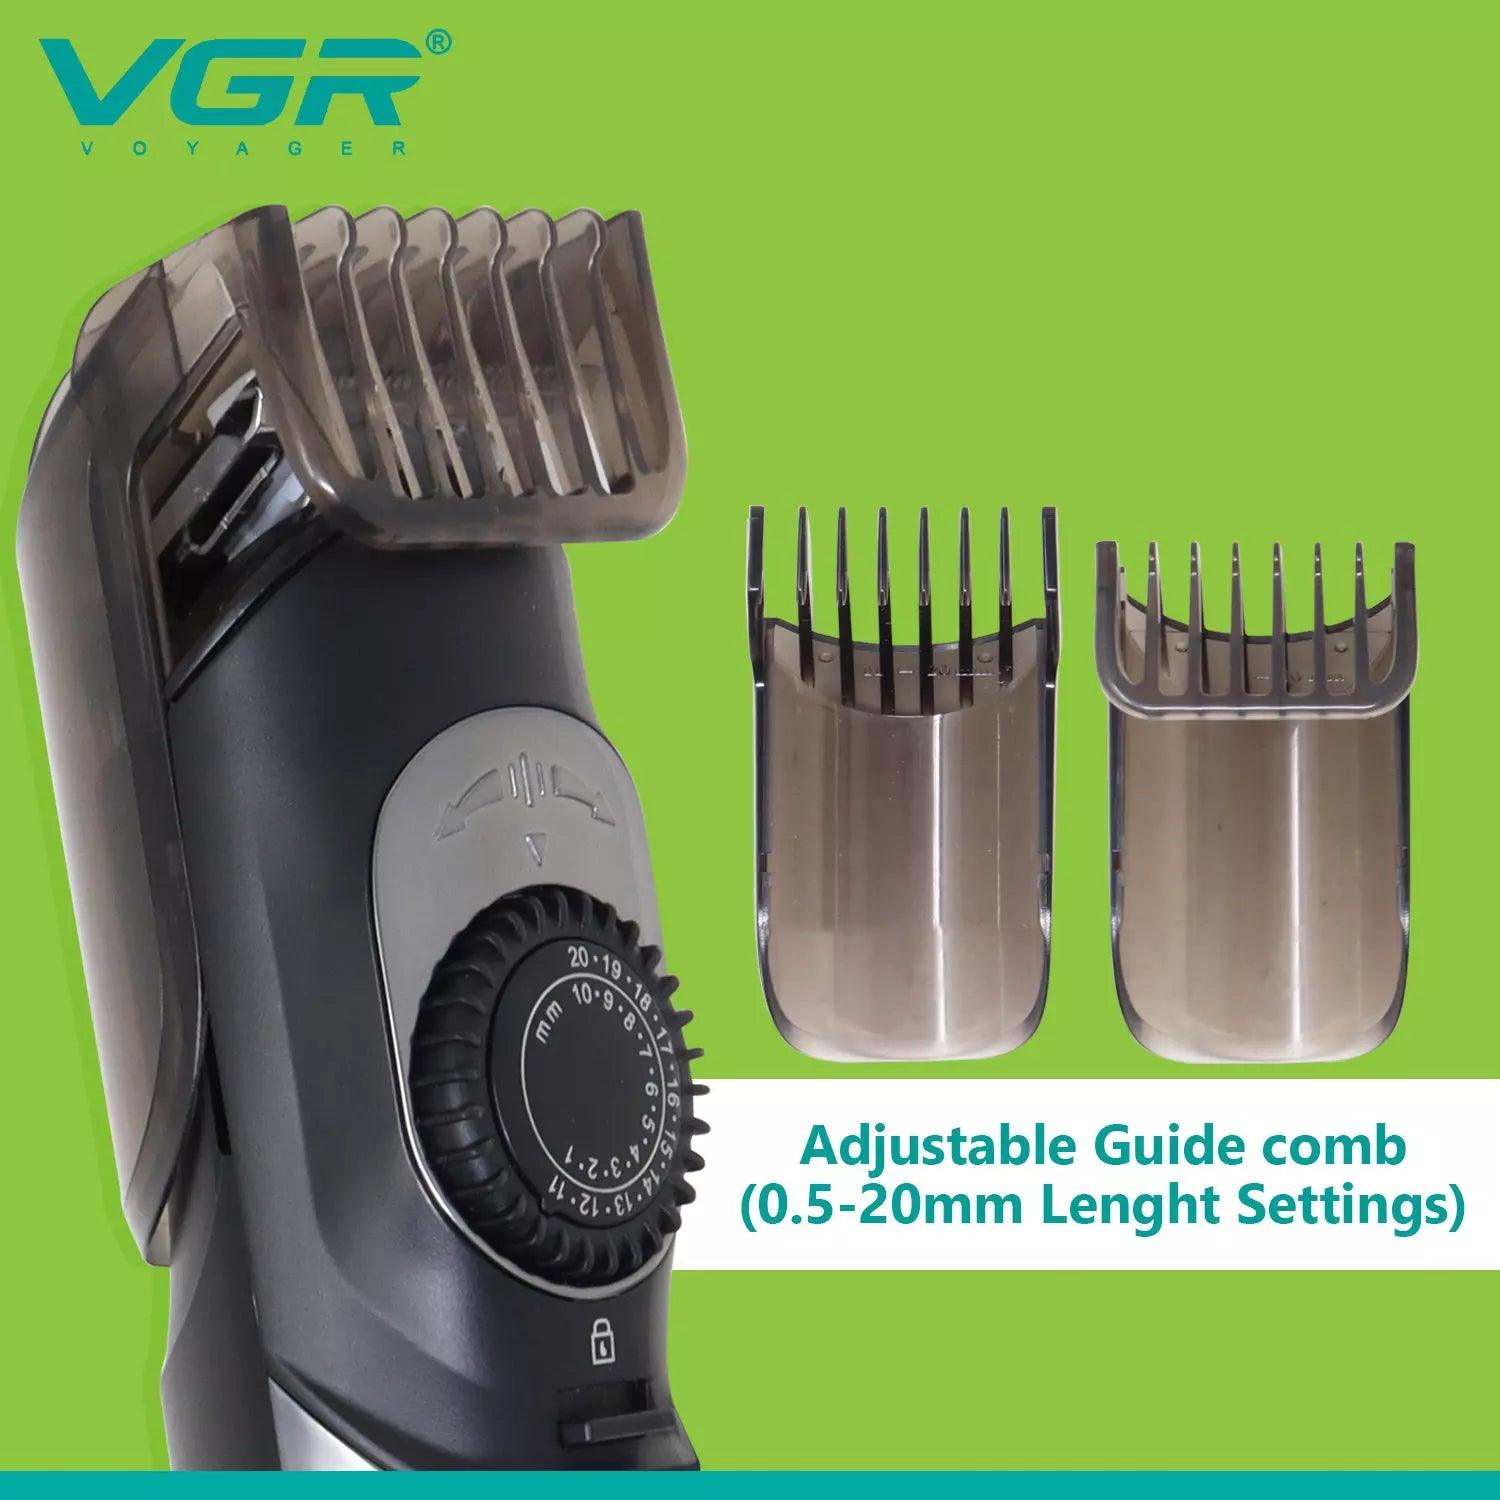 VGR V-088 Hair Trimmer For Men, Silver